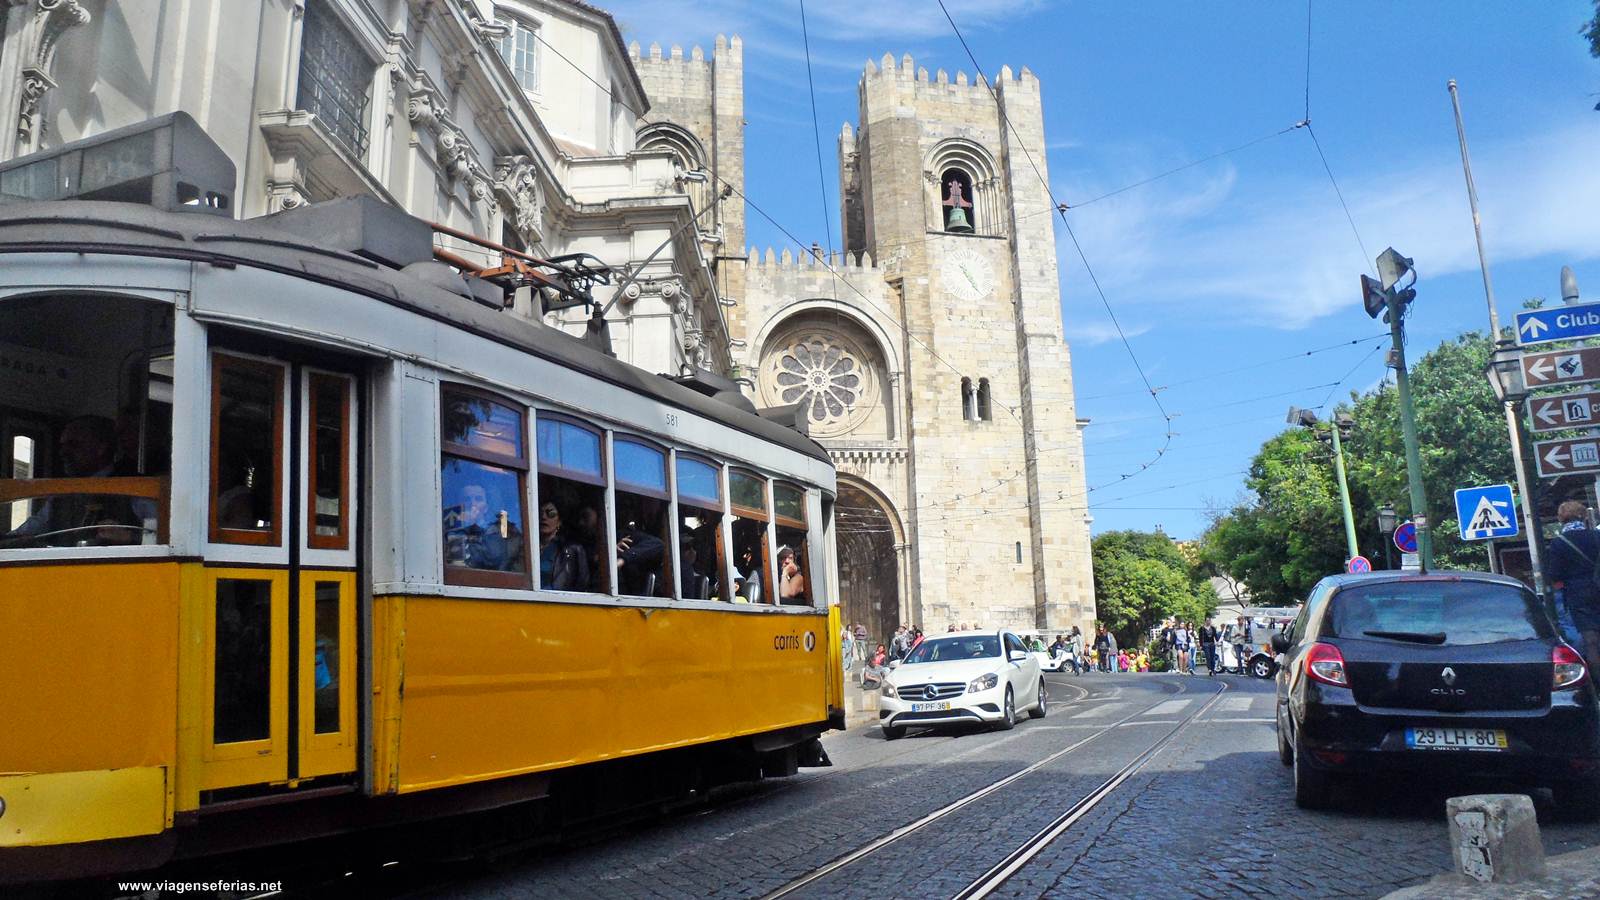 Típico eléctrico amarelo da cidade de Lisboa junto à Sé Catedral